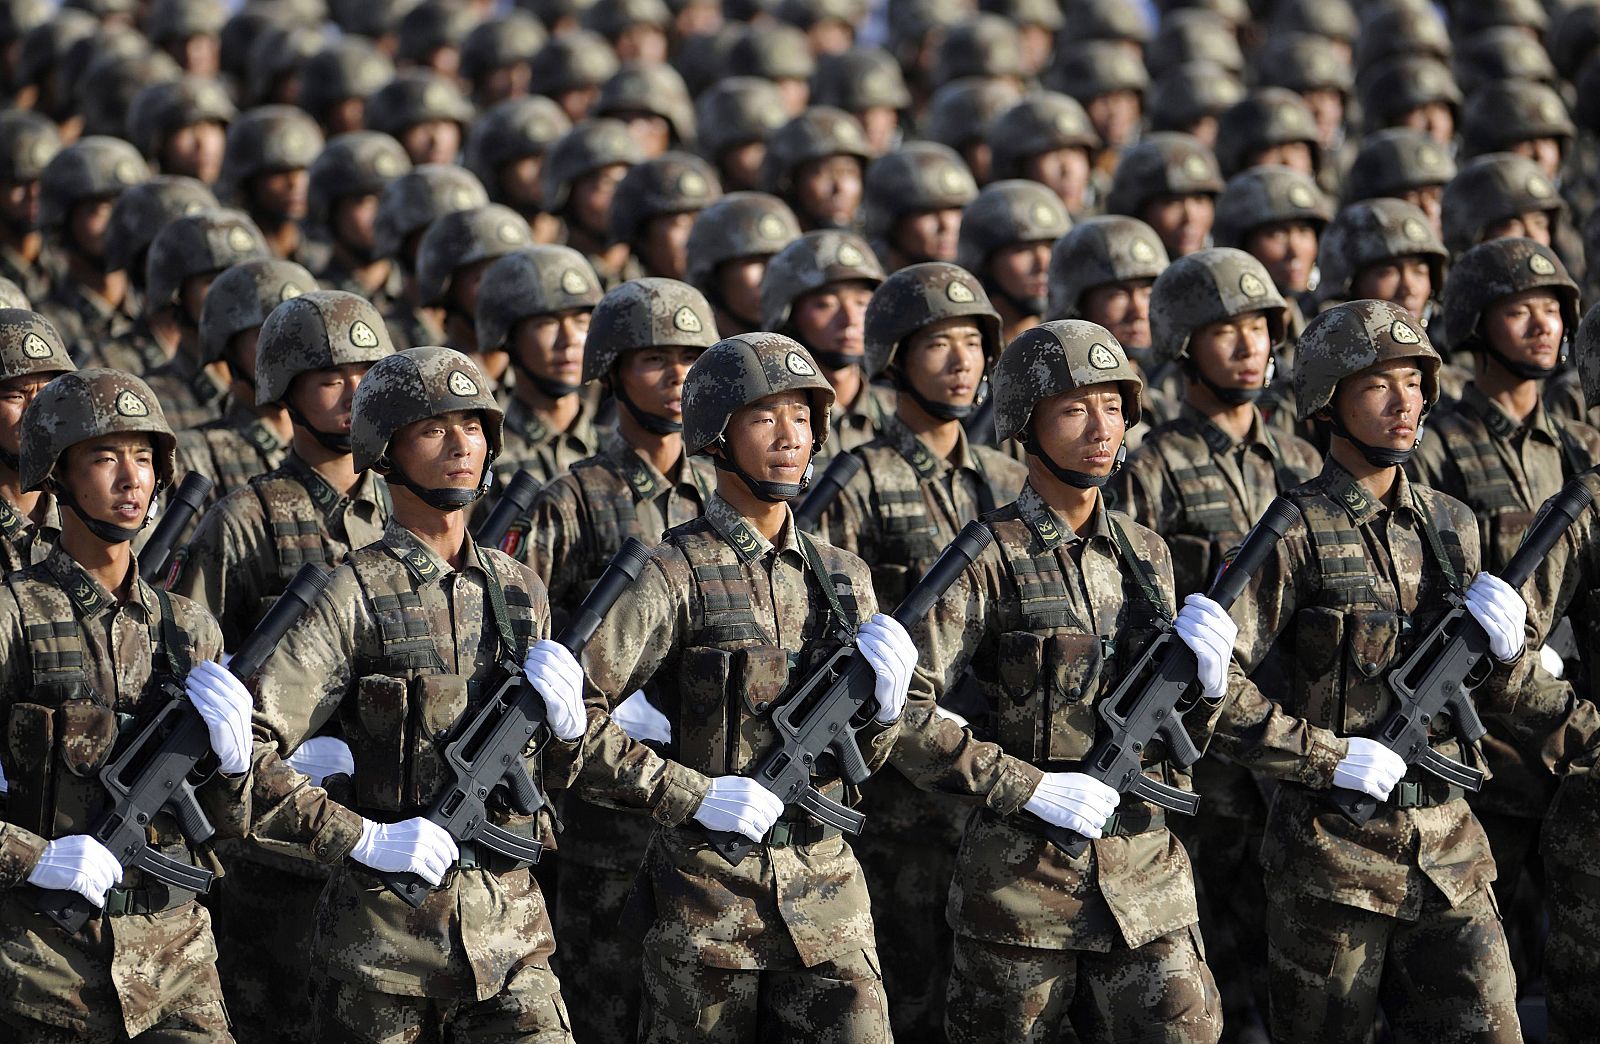 Soldados del Ejército de Liberación del Pueblo marchan en formación durante una sesión de entrenamiento en Pekín.